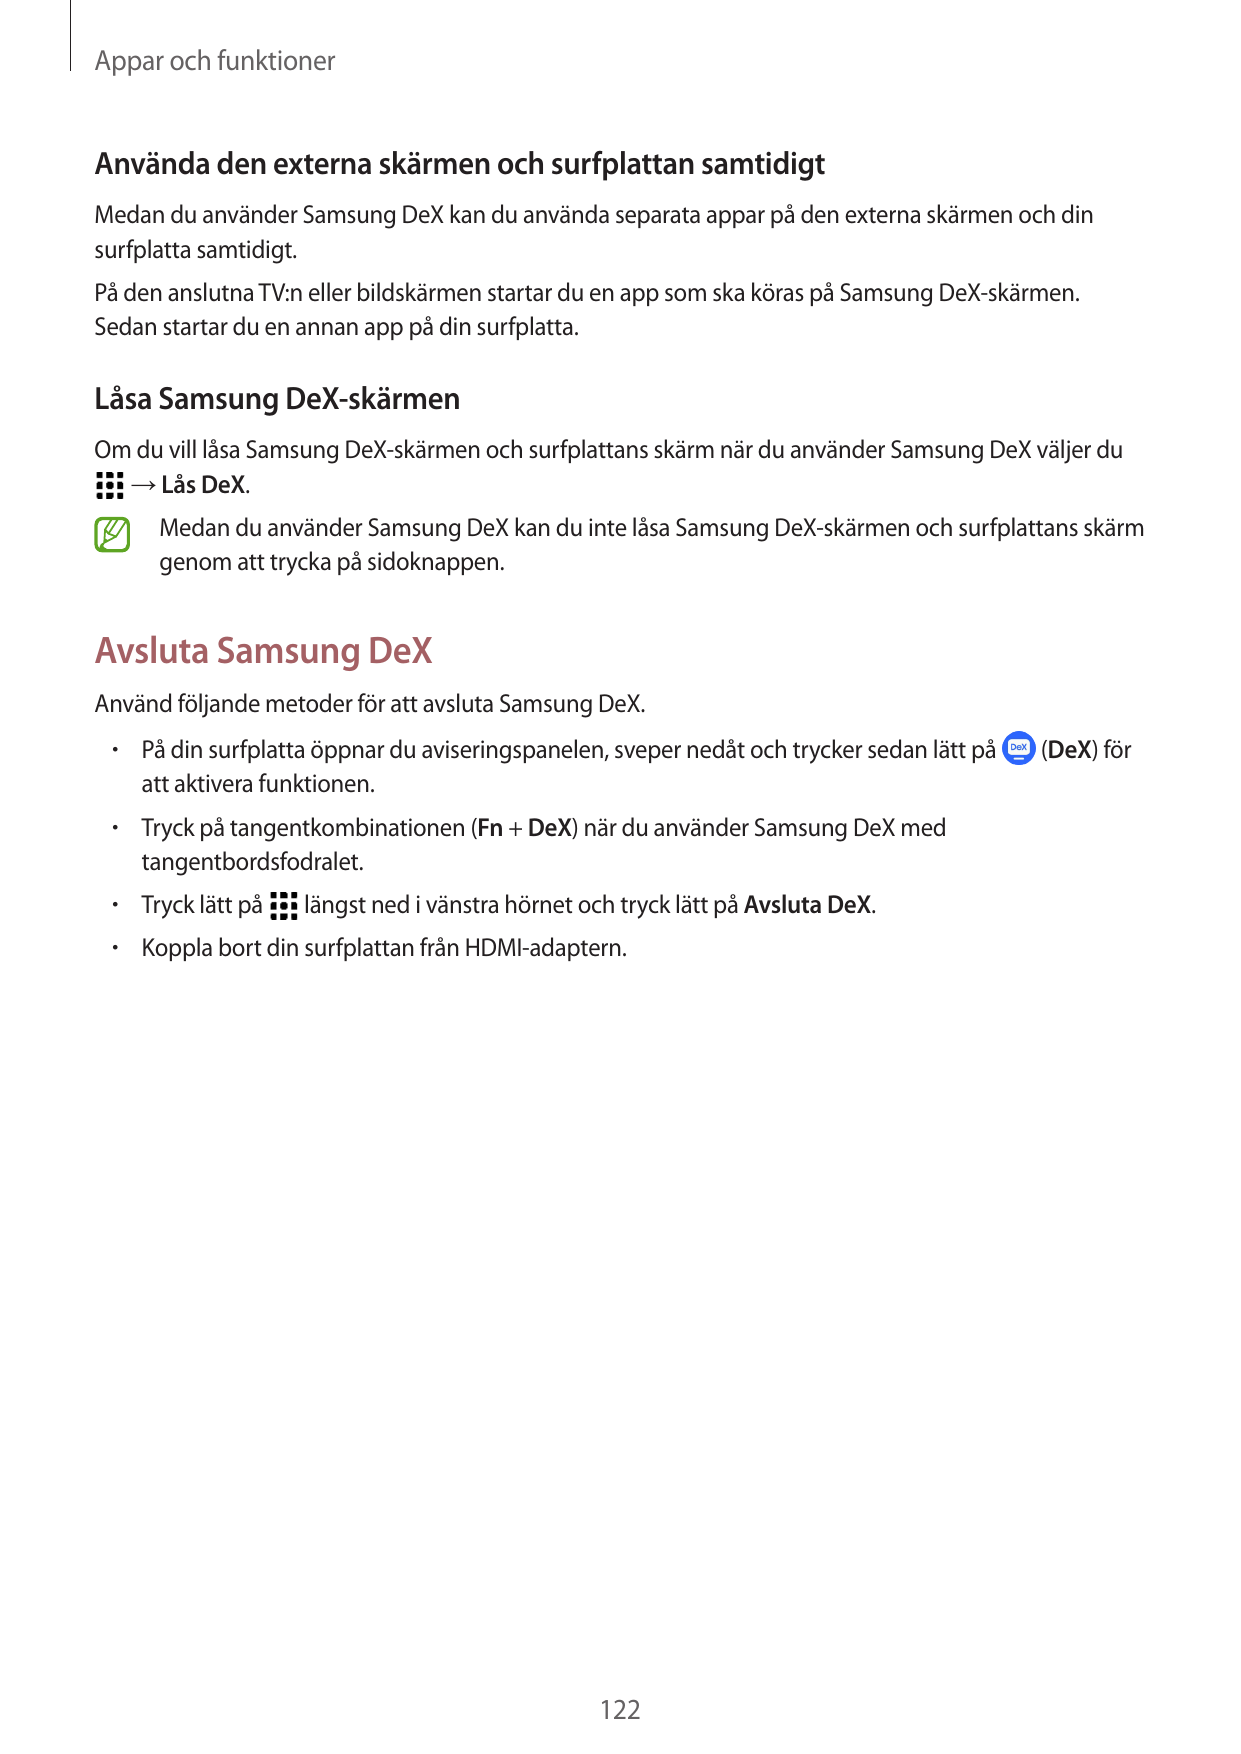 Appar och funktionerAnvända den externa skärmen och surfplattan samtidigtMedan du använder Samsung DeX kan du använda separata a